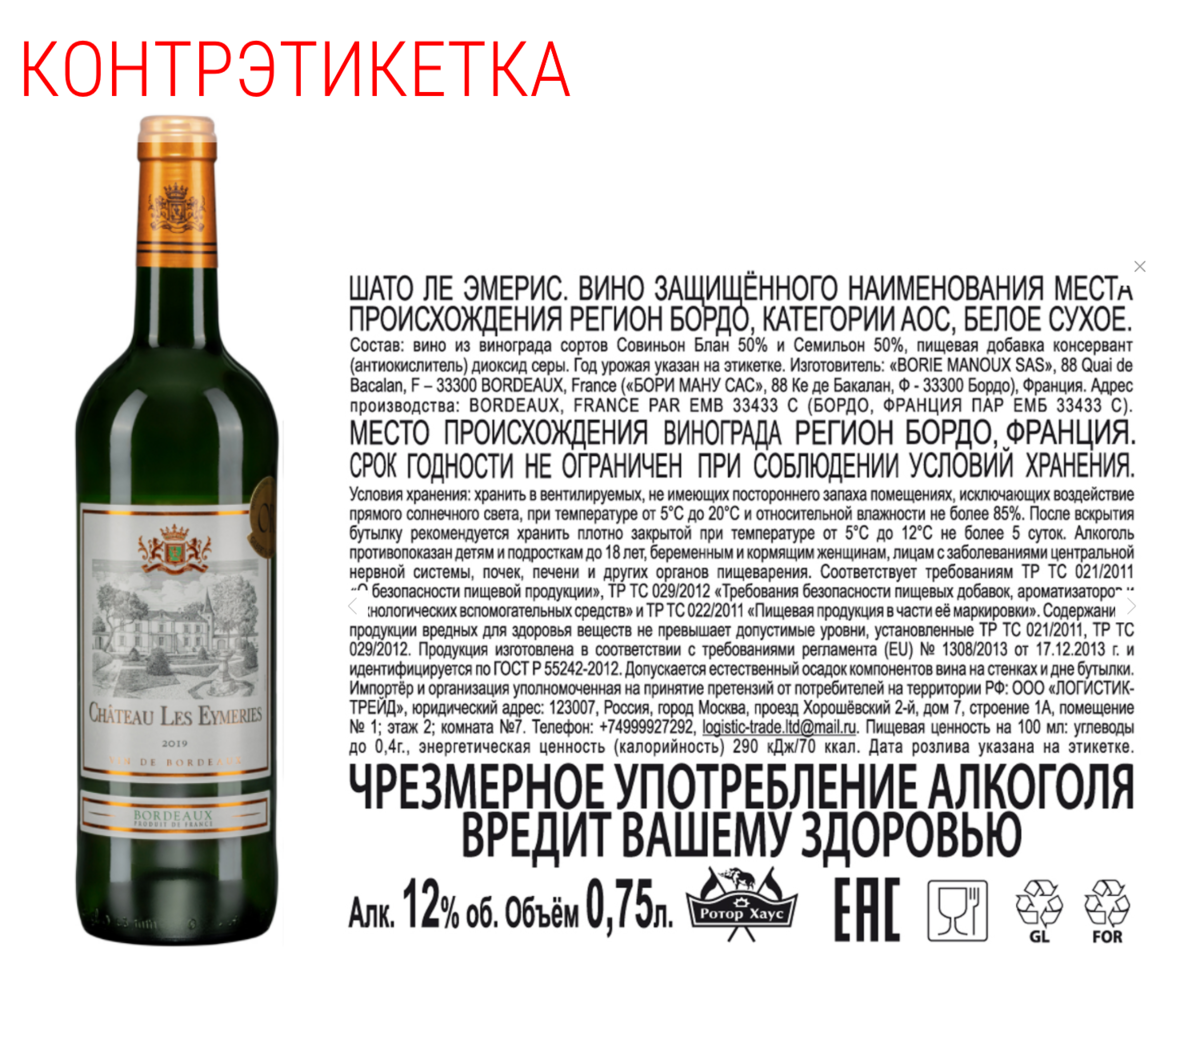 Всему вино виной текст. Контрэтикетки вина. Контрэтикетка на вине. Контрэтикетка российское вино.